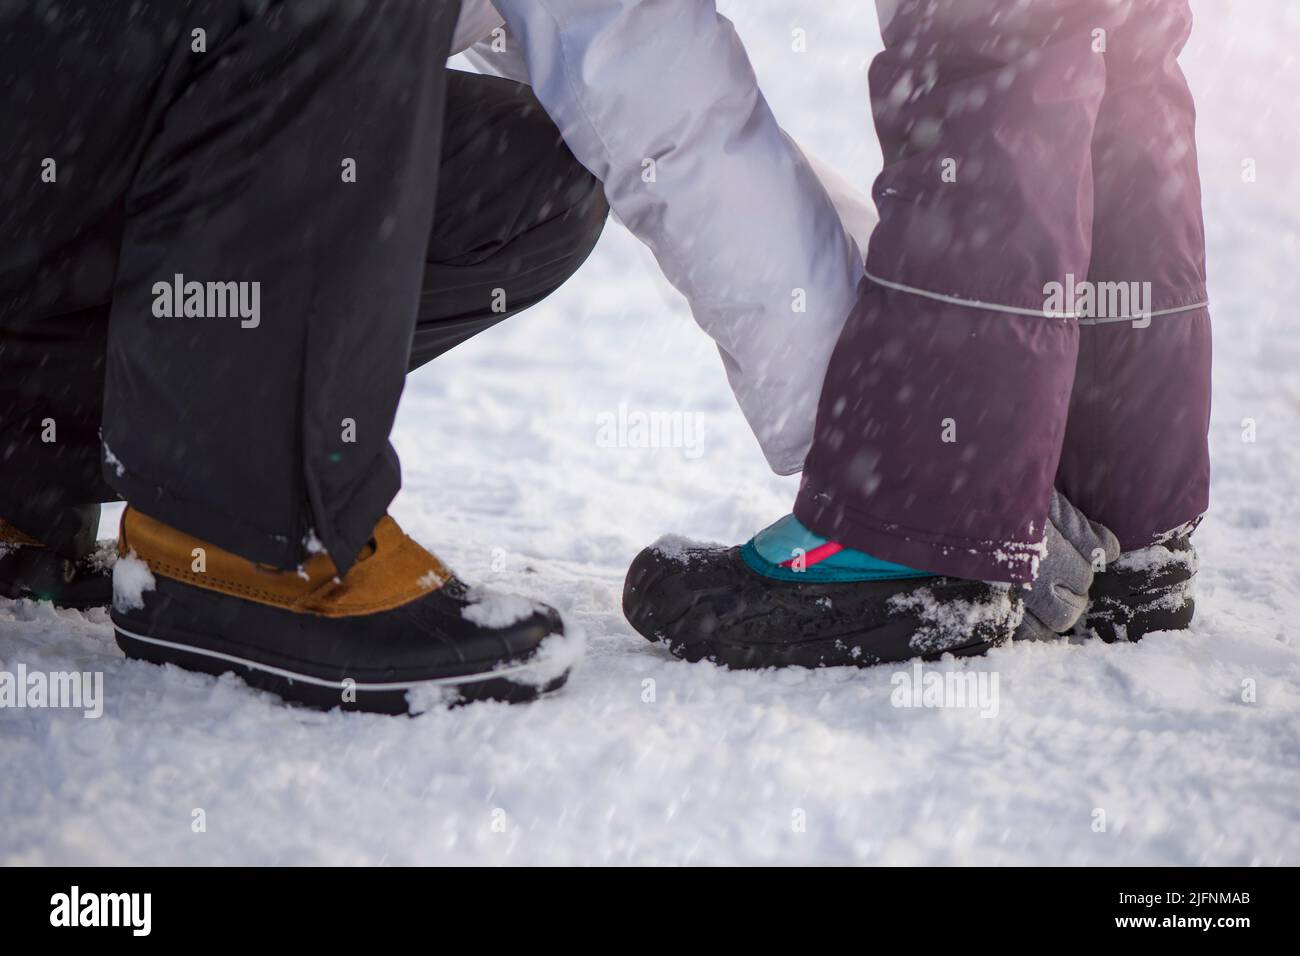 Scarpe invernali nella neve. Primo piano delle scarpe invernali. Scarpe impermeabili per bambini per camminare sulla neve. Temperature basse e caduta della neve Foto Stock